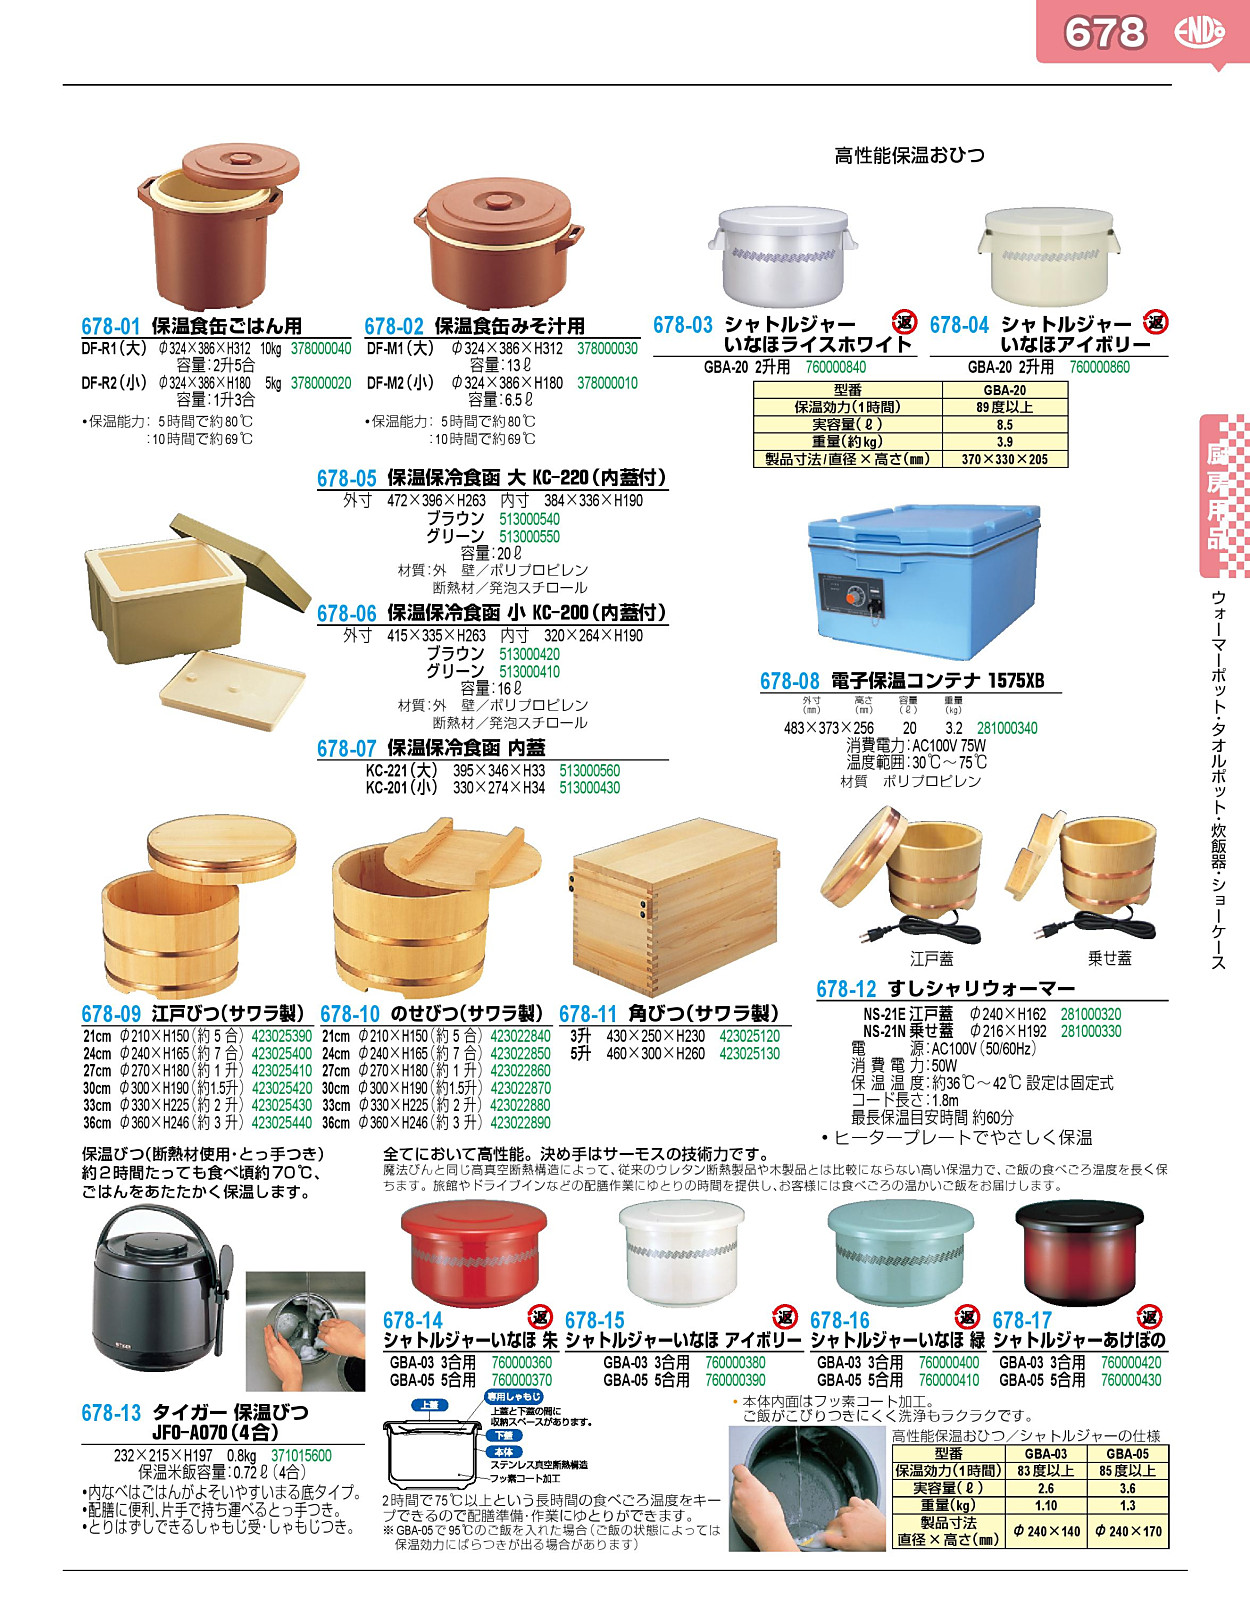 調理小物 厨房用品 / のせびつ(サワラ製)30cm 1.5升 寸法: φ300 x